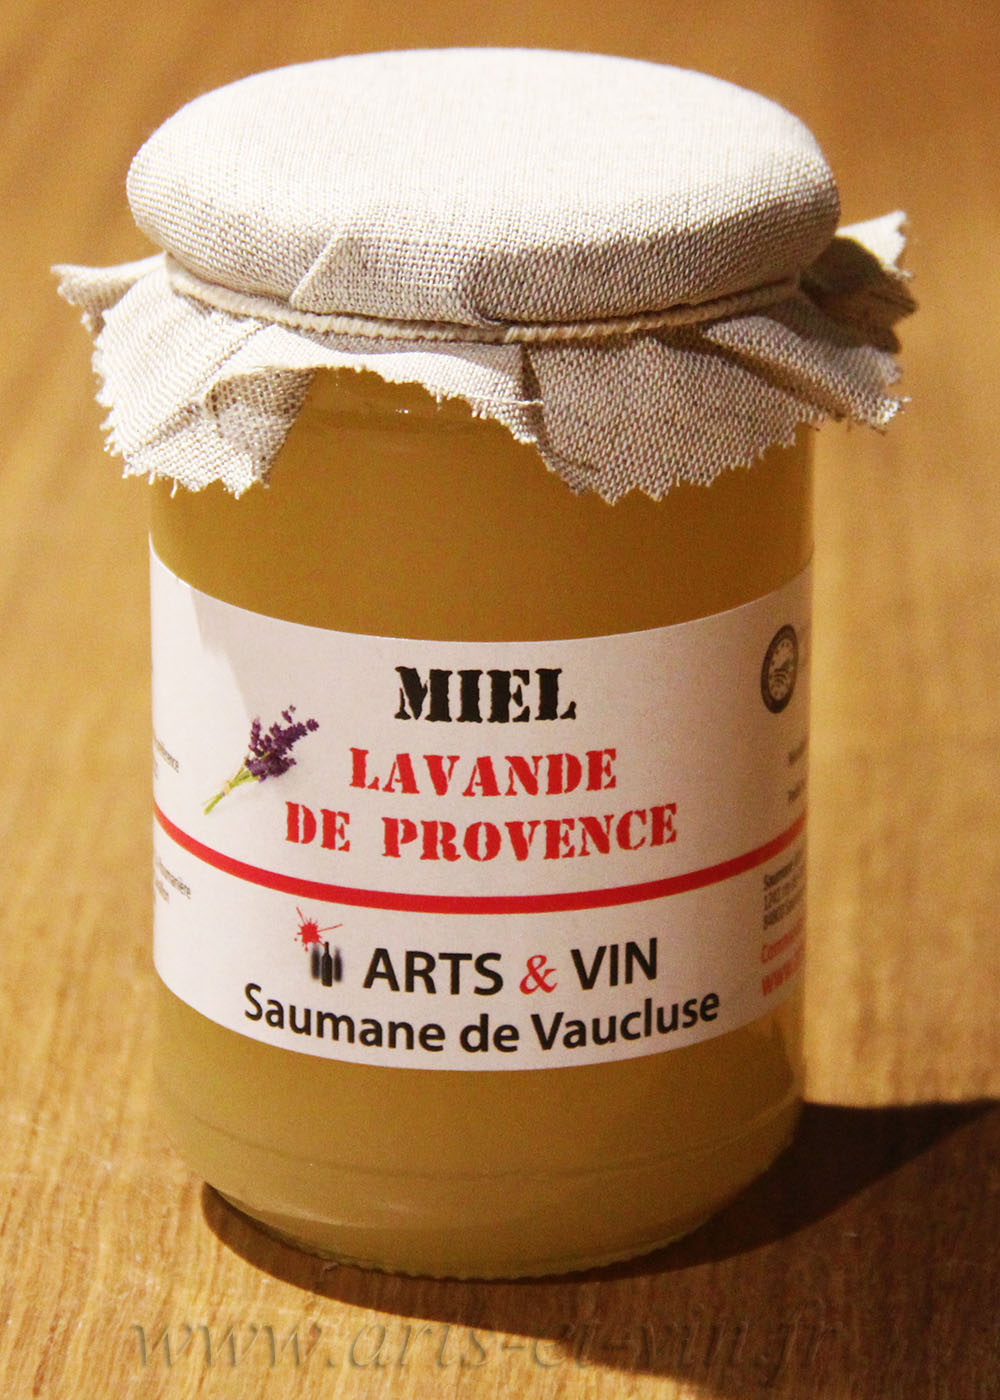 Miel de lavande fine : Good'Amande : producteurs d'amandes de Provence